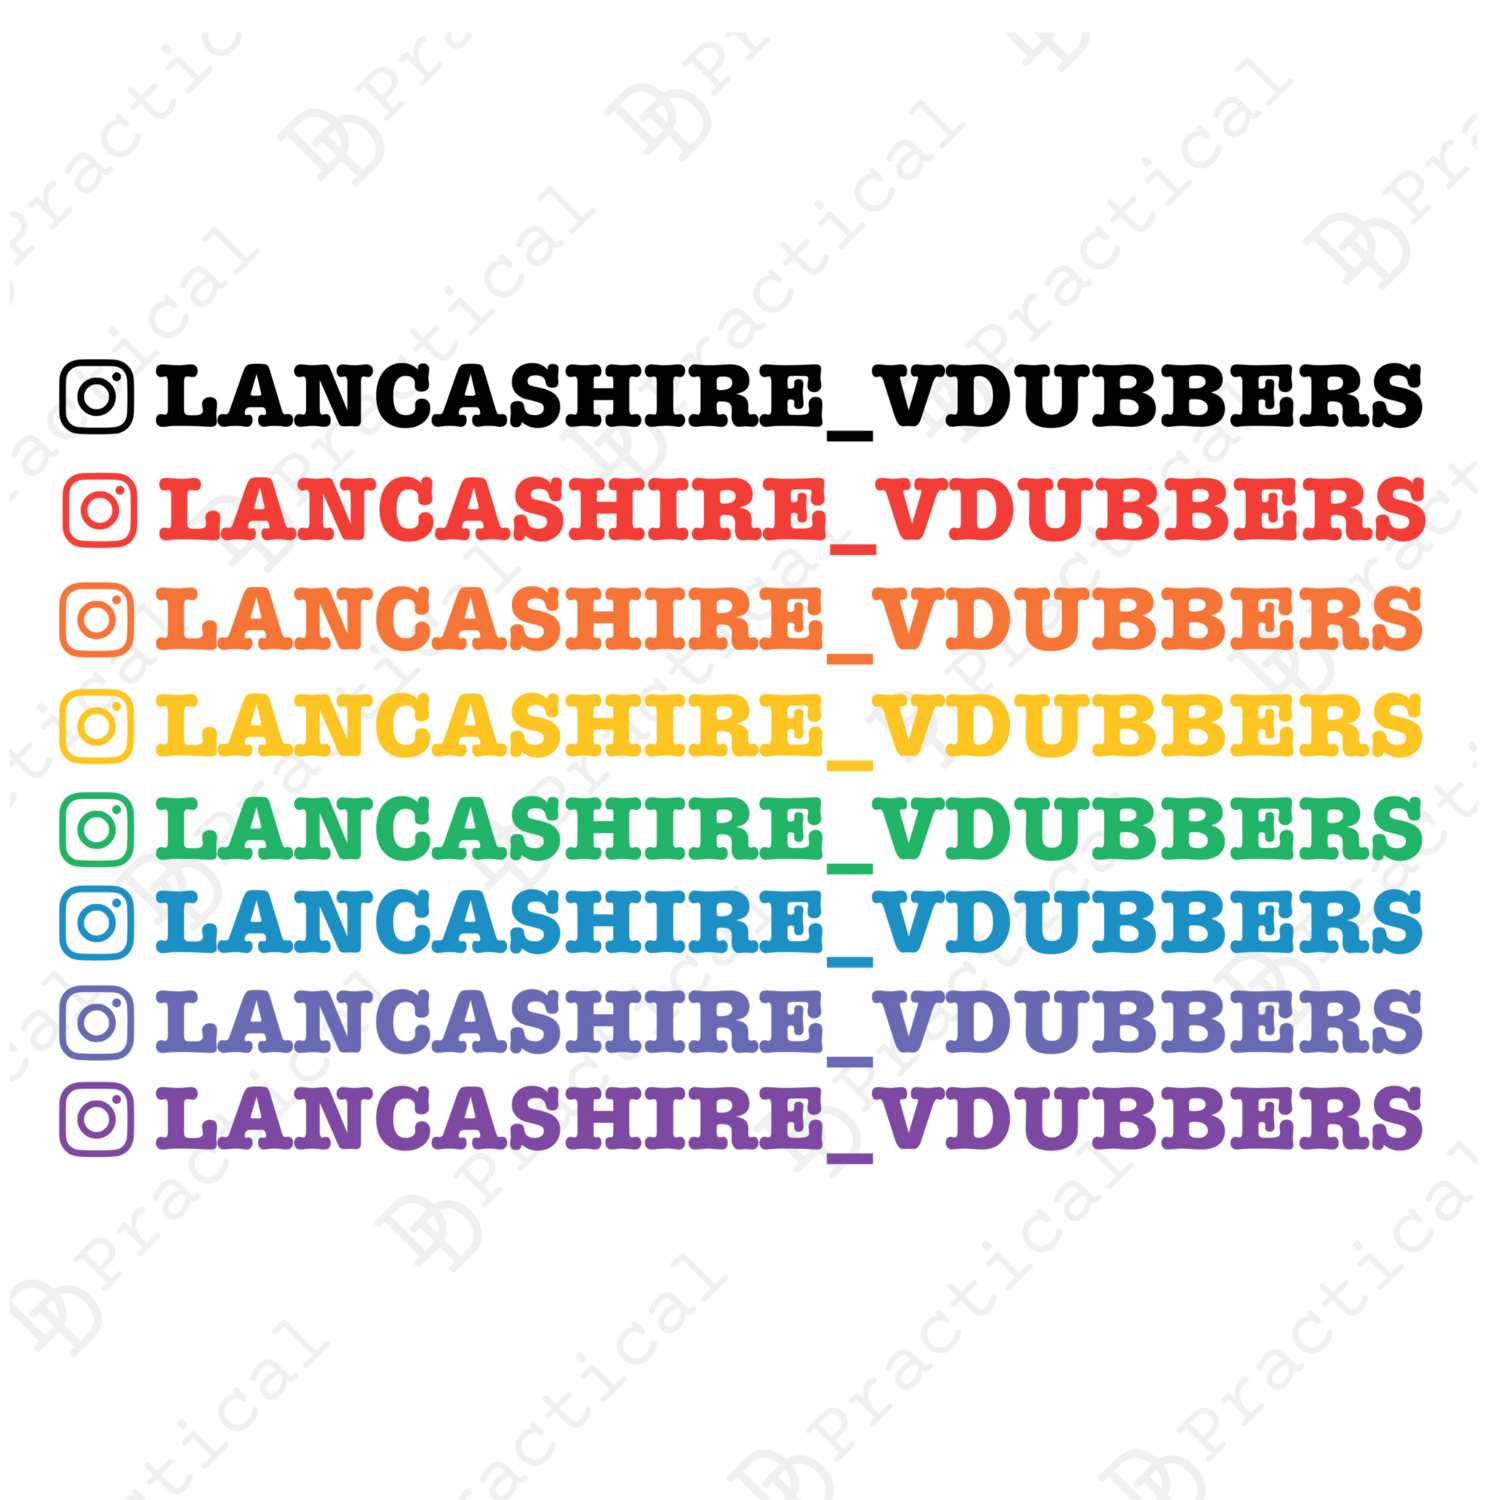 Lancashire VDubbers Official Instagram Stickers